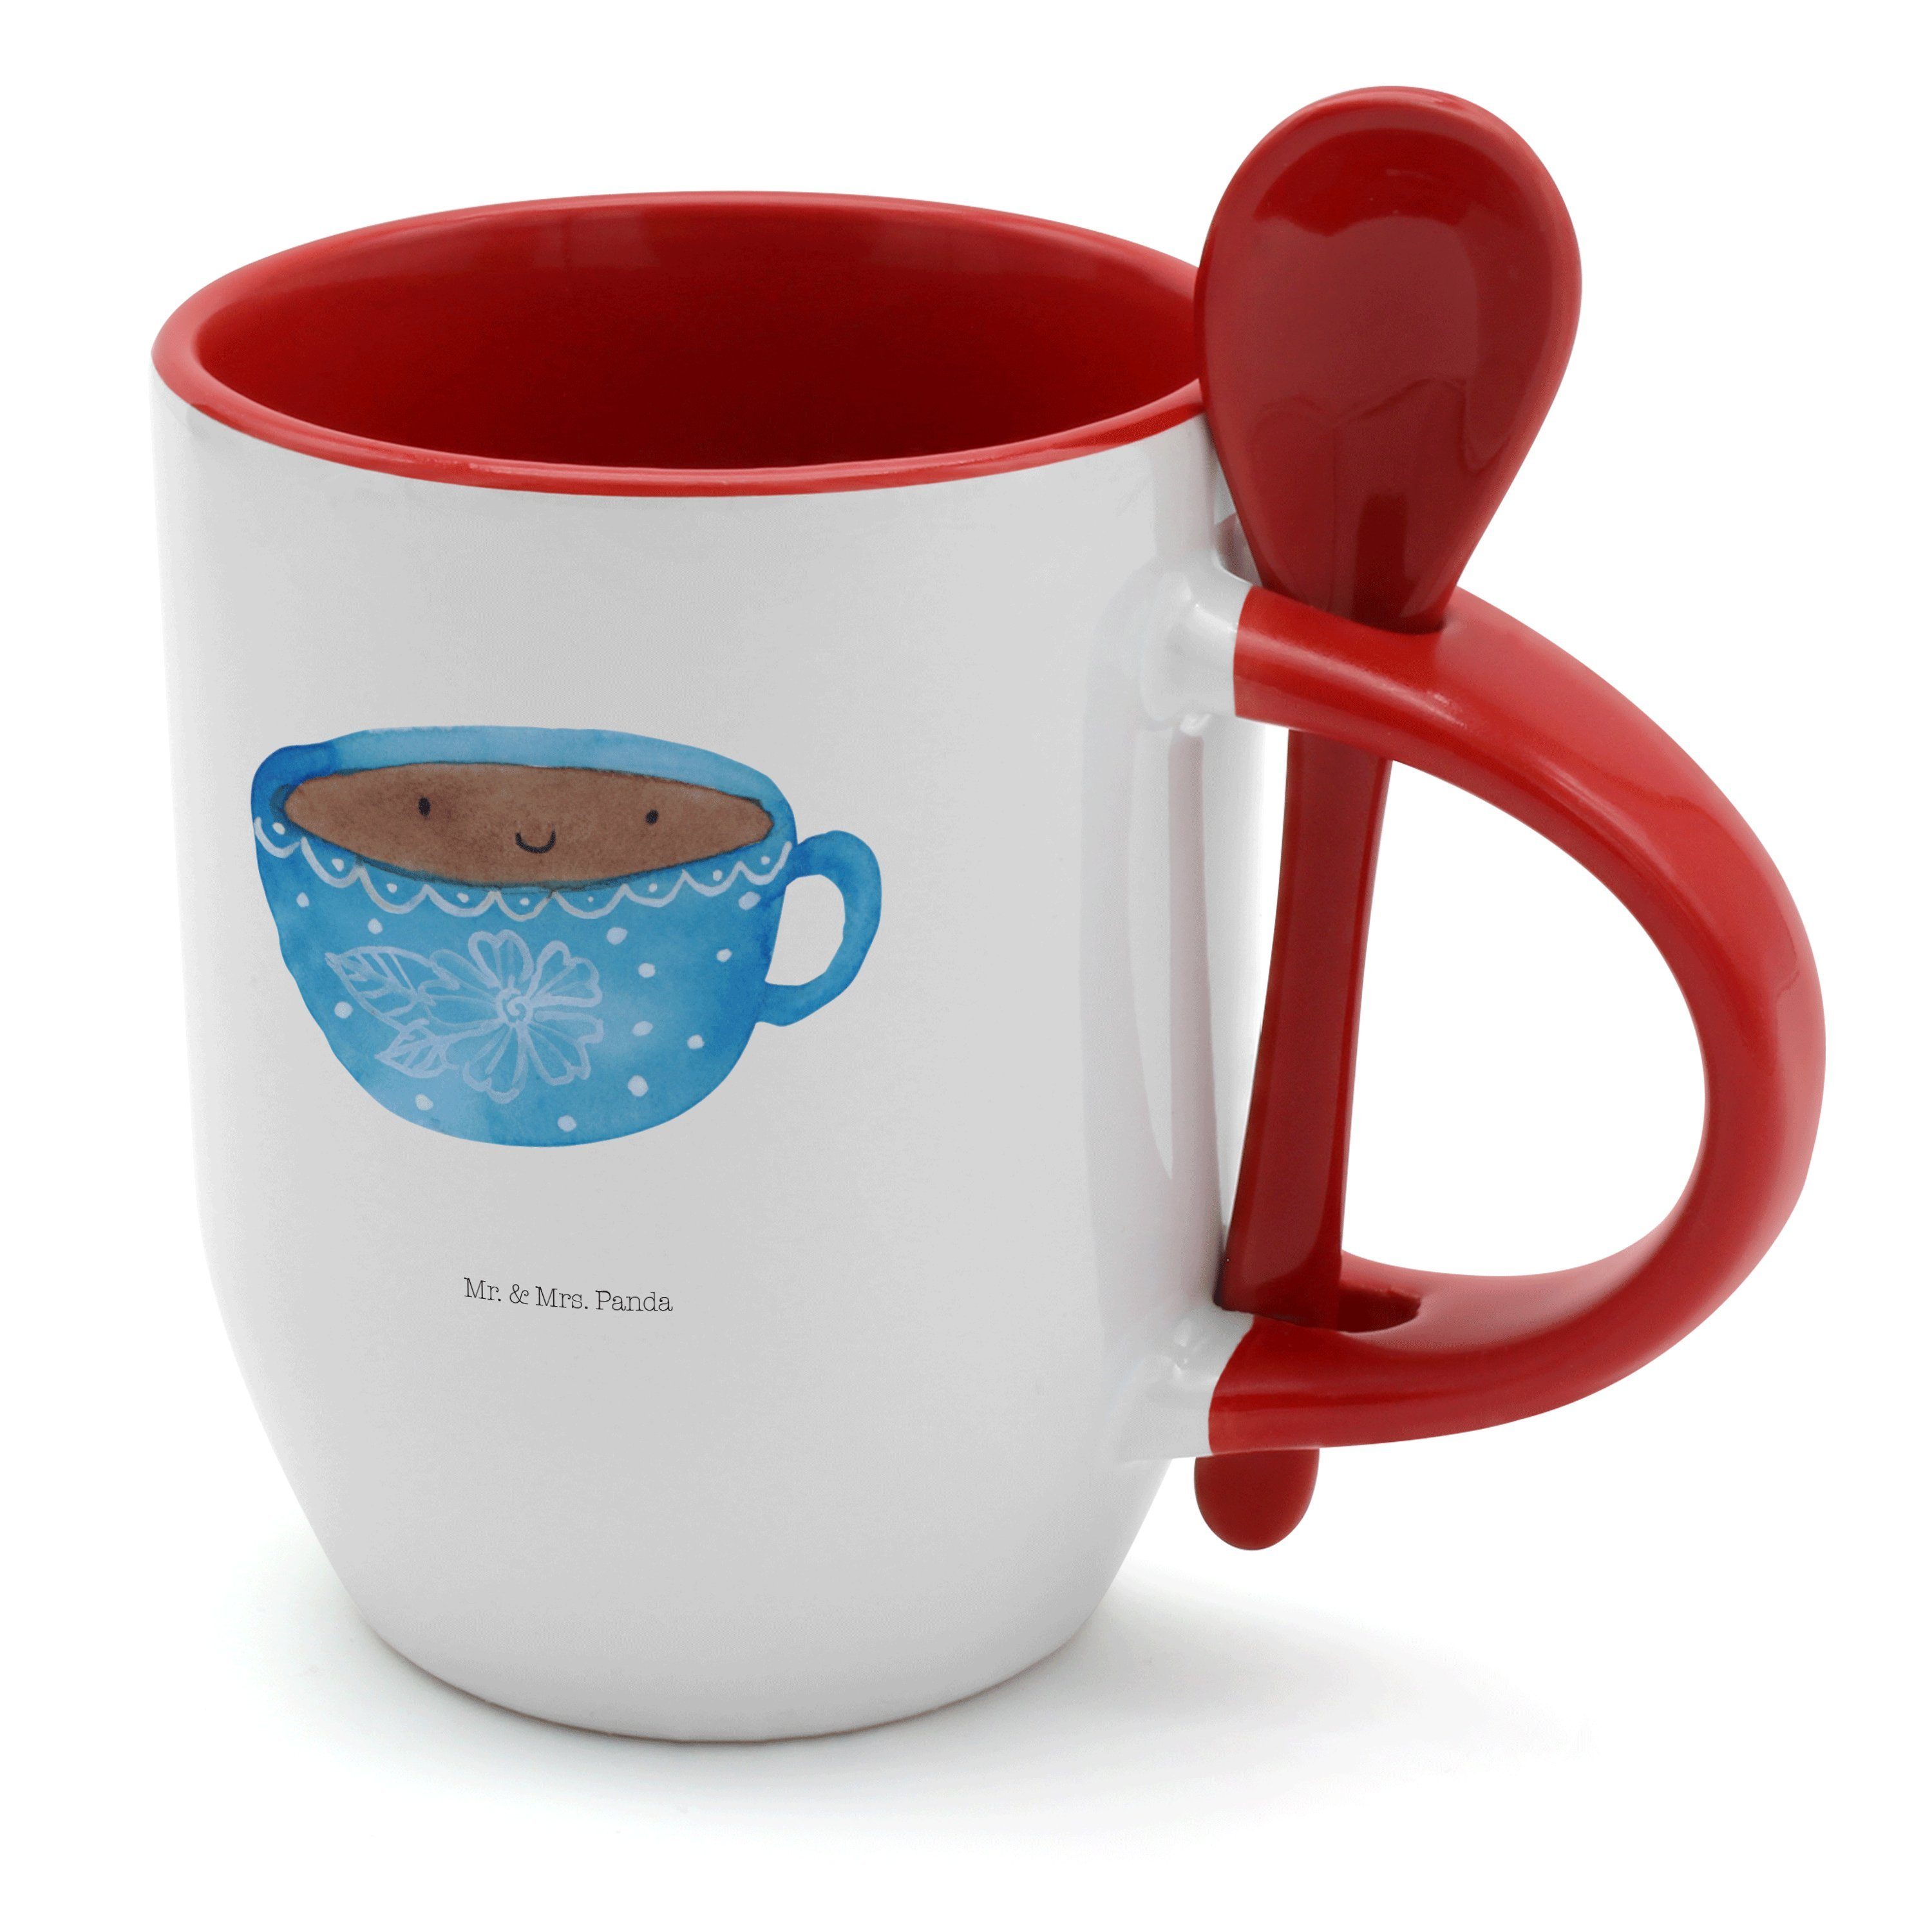 Mr. & Mrs. Panda Tasse Kaffee Tasse - Weiß - Geschenk, Tiere, Liebe, lustige Sprüche, Kaffee, Keramik